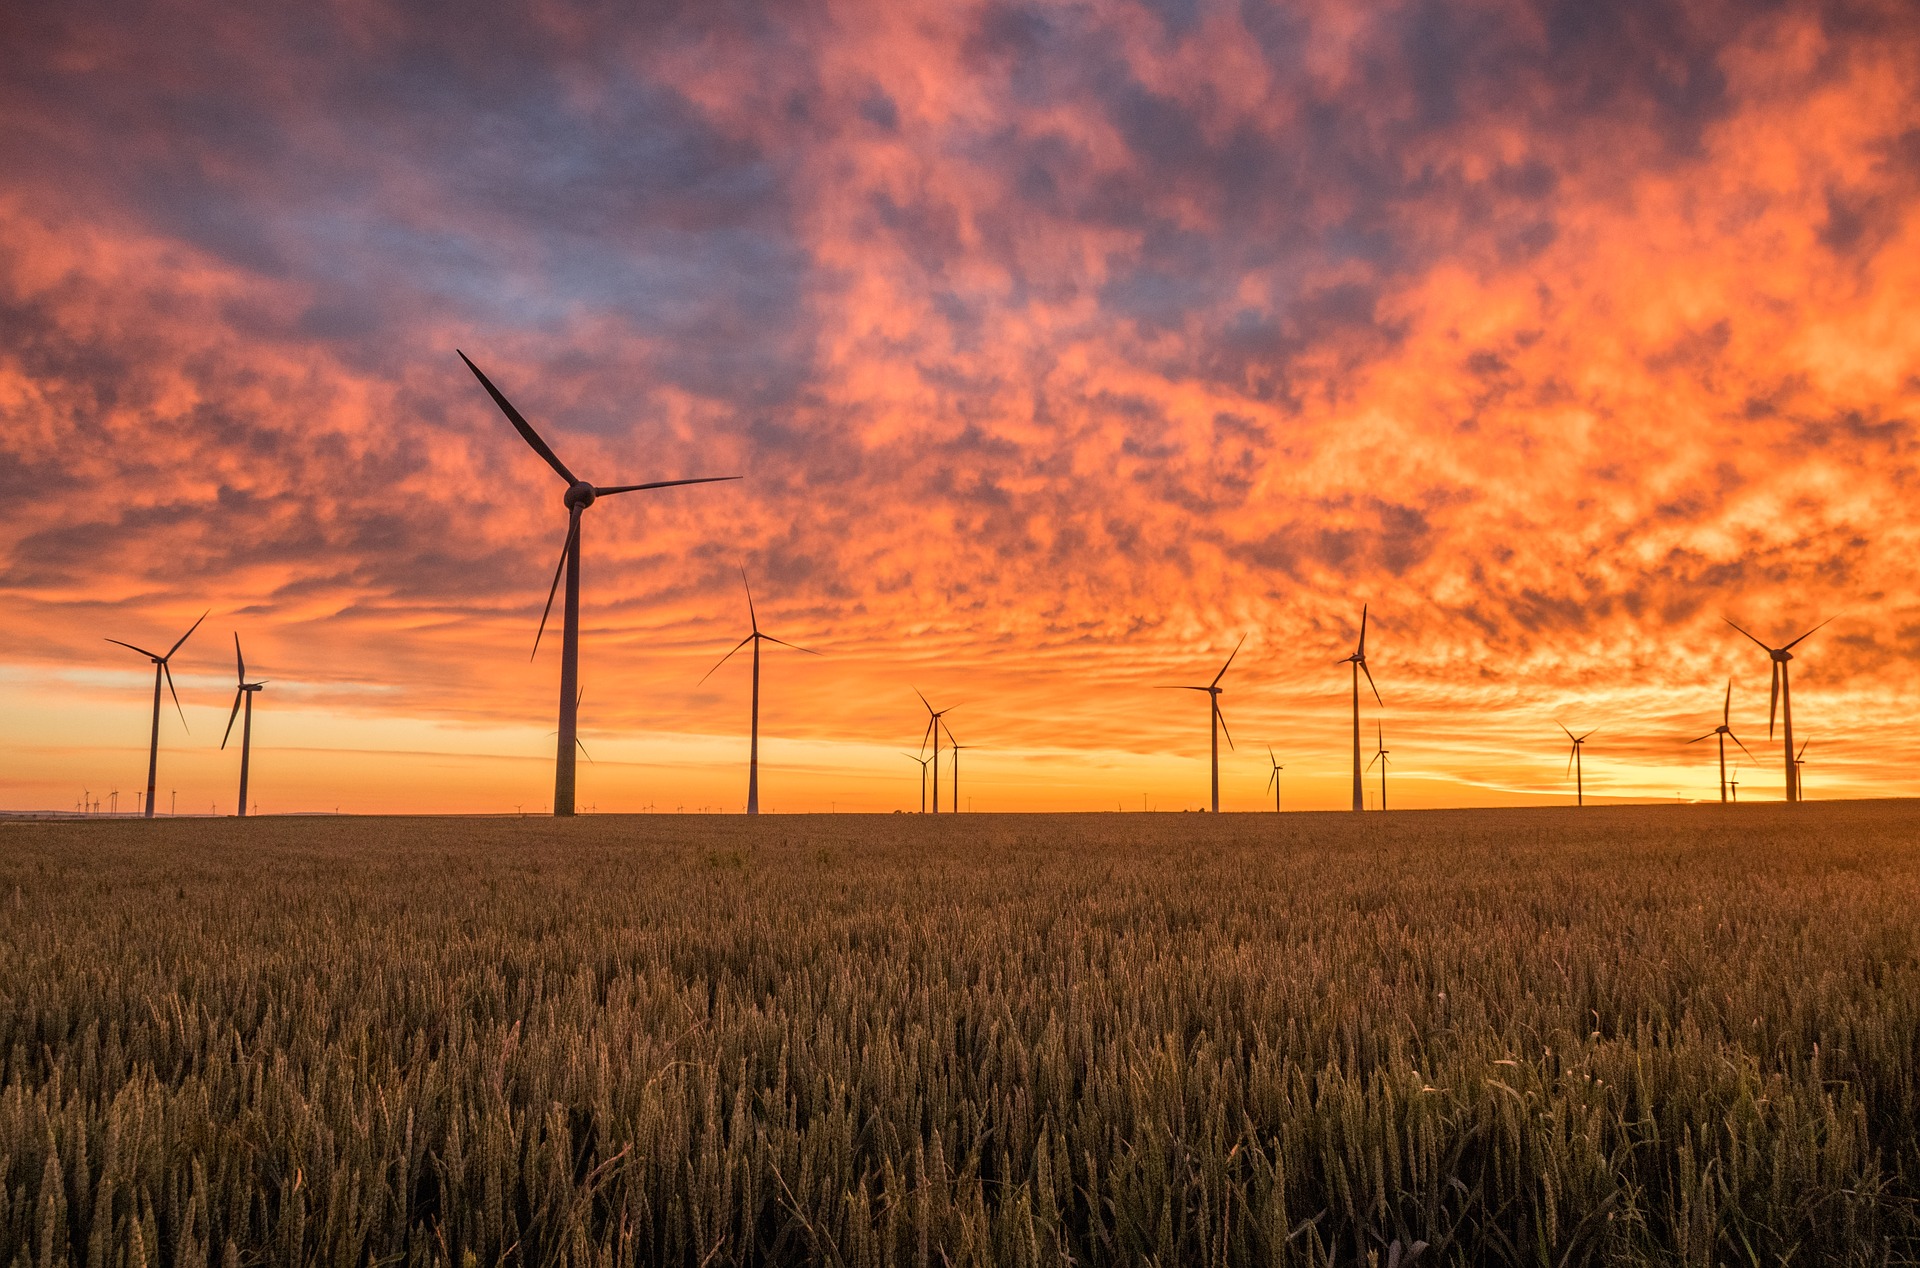 Ergste: CDU beantragt Planungsstopp von Windkraftanlagen